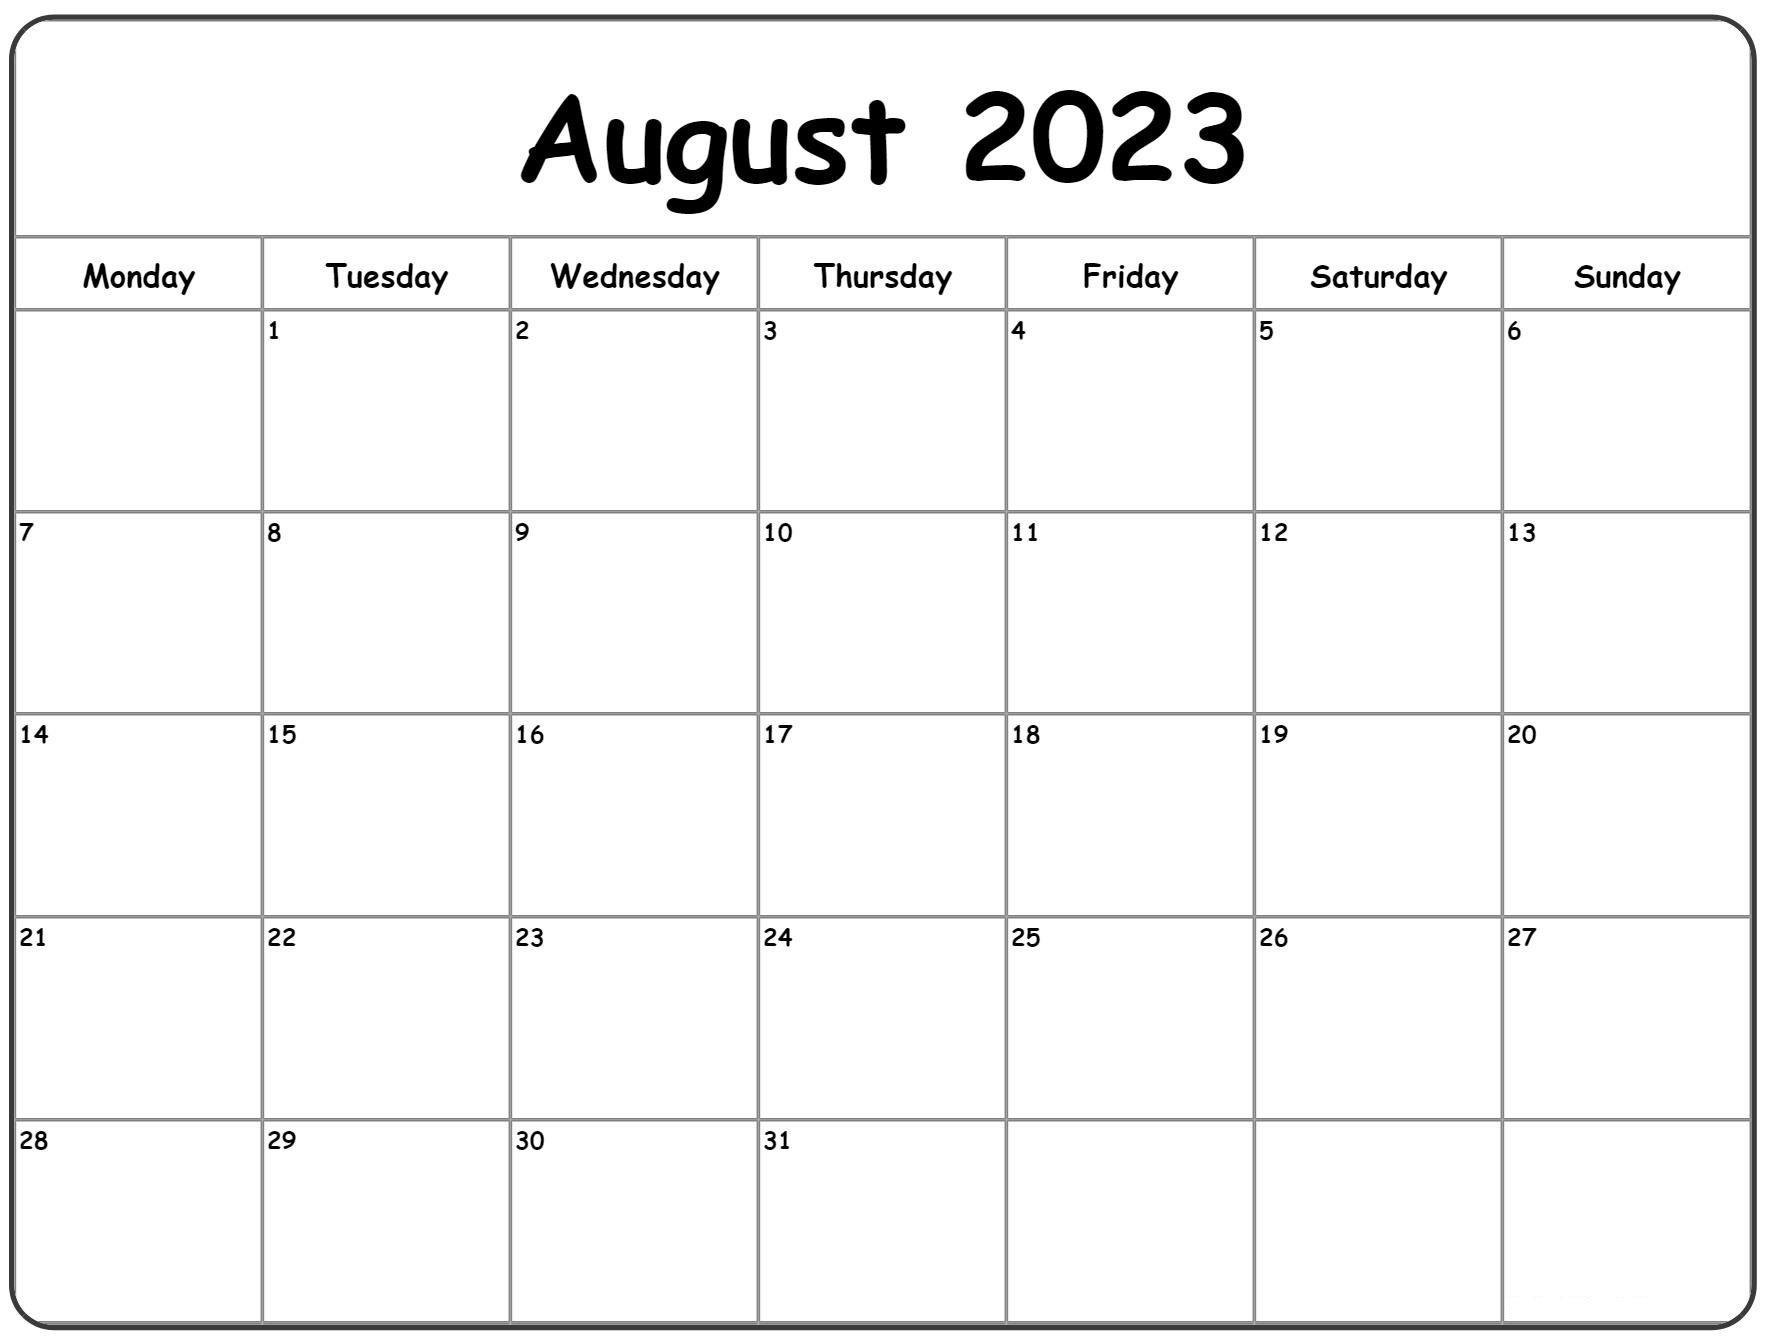 August Kalender 2023 kostenlos herunterladen und ausdrucken